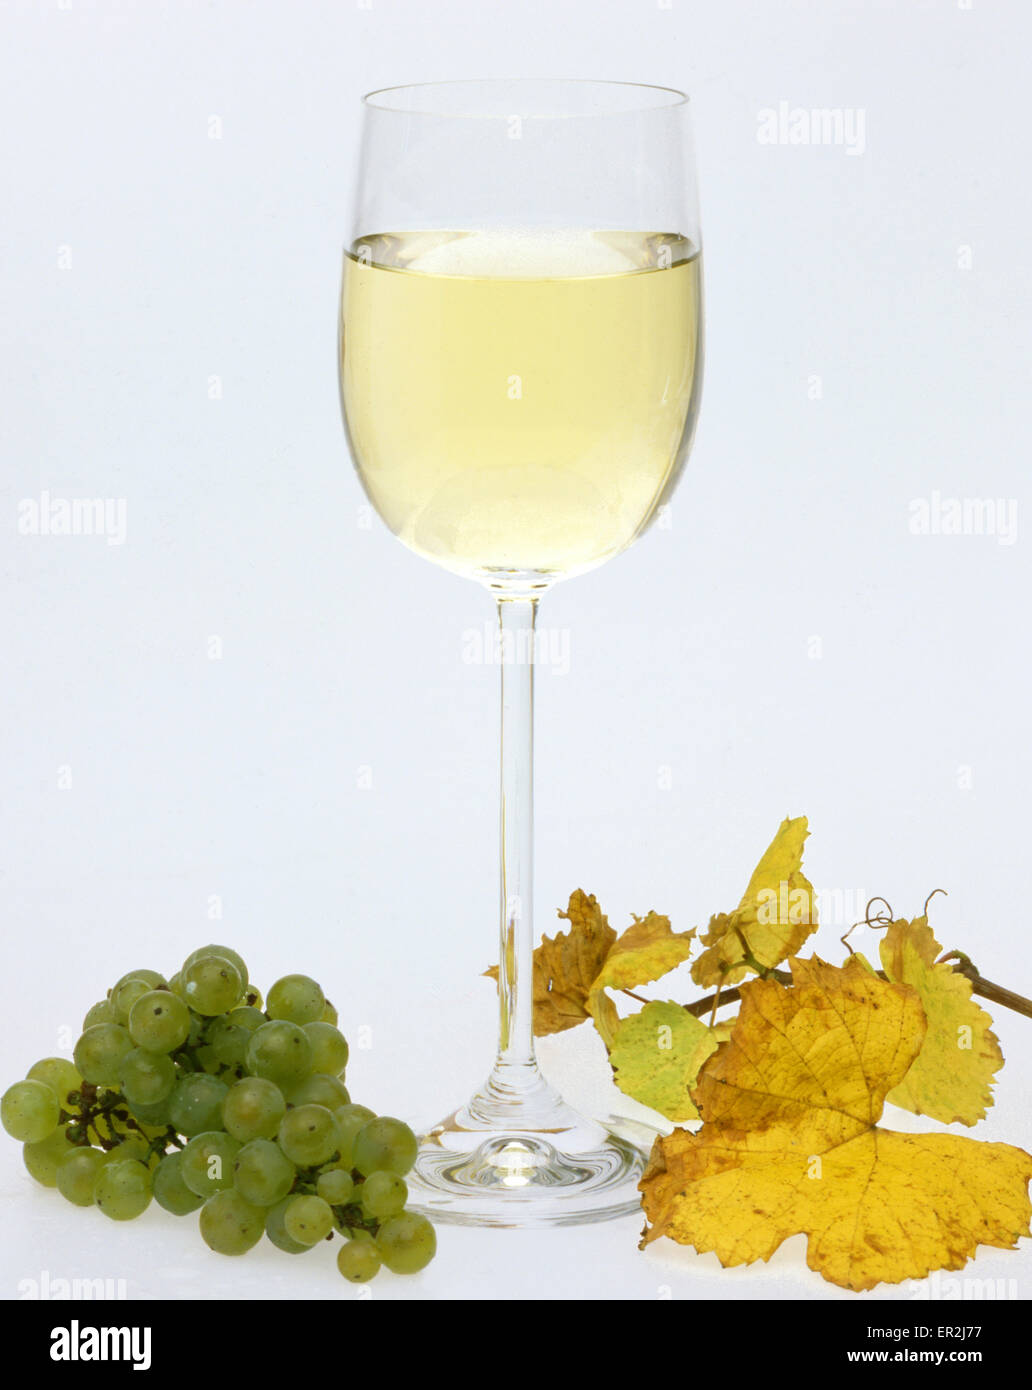 Wein, Weisswein, Glas, Weinglas Trinken Alkohol,,,,, Weintrauben Weinlaub Getraenke Foto de stock